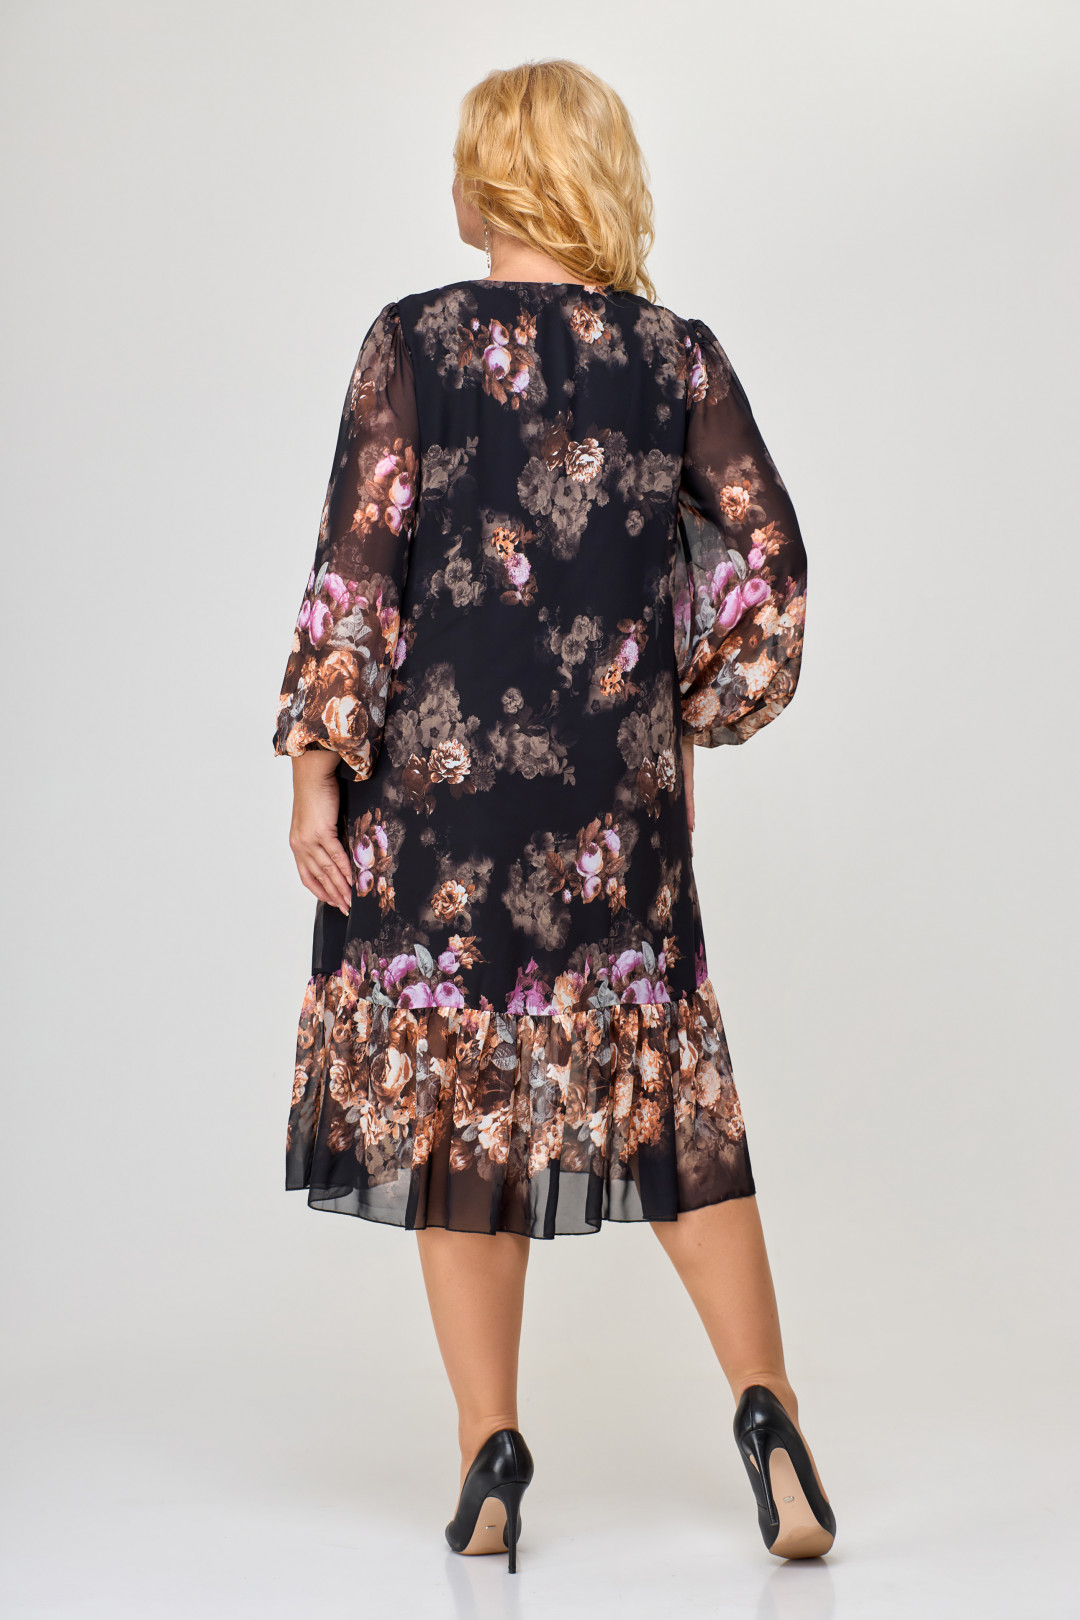 Платье Светлана-Стиль 1754 черный+цветы